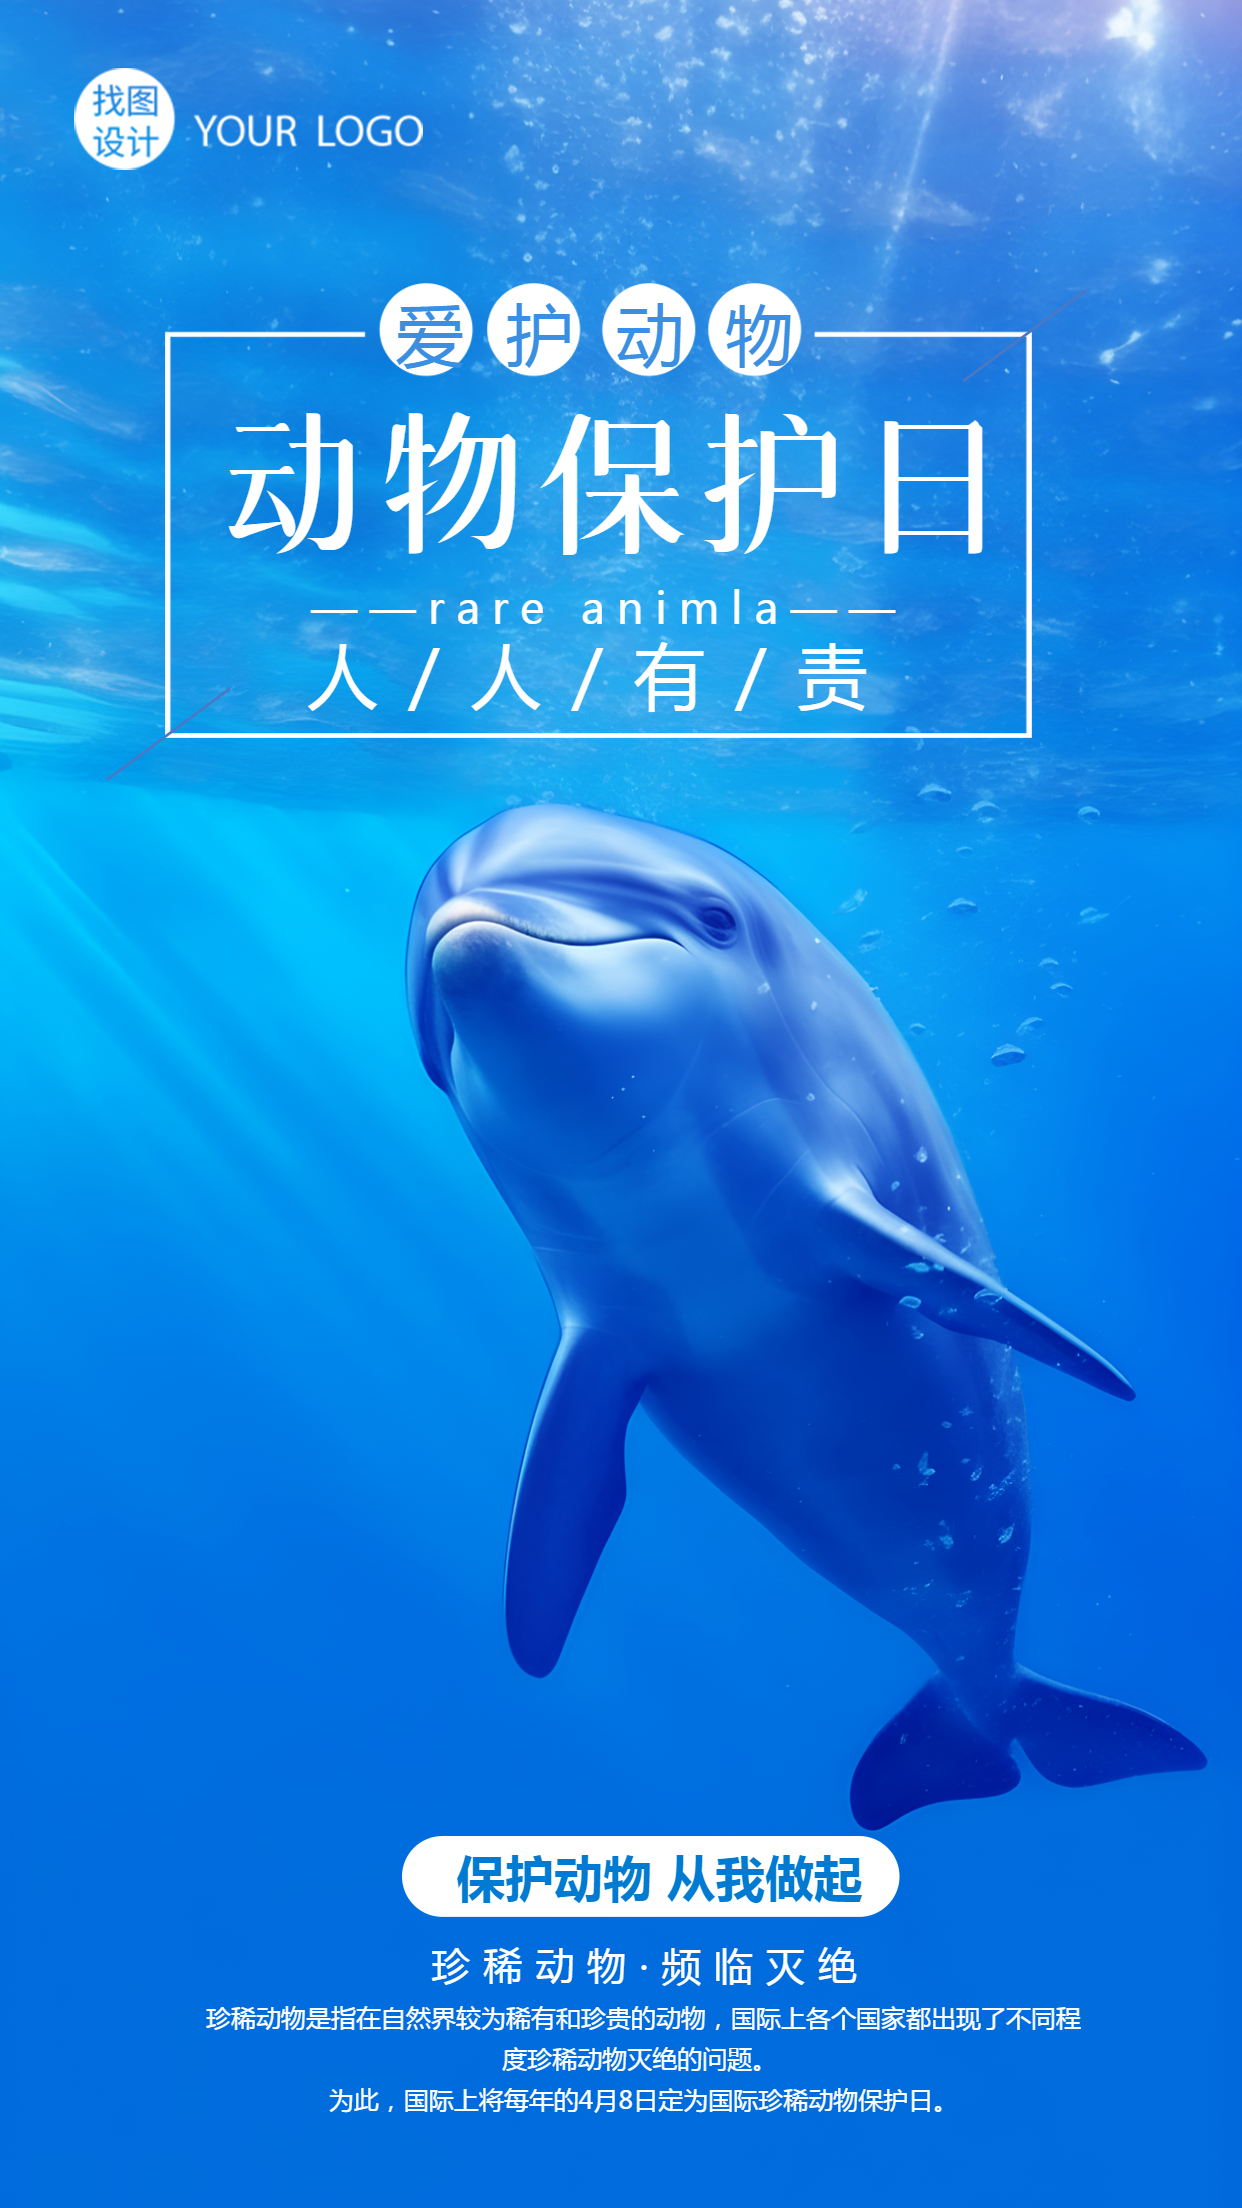 世界动物日保护动物从我做起实景手机海报